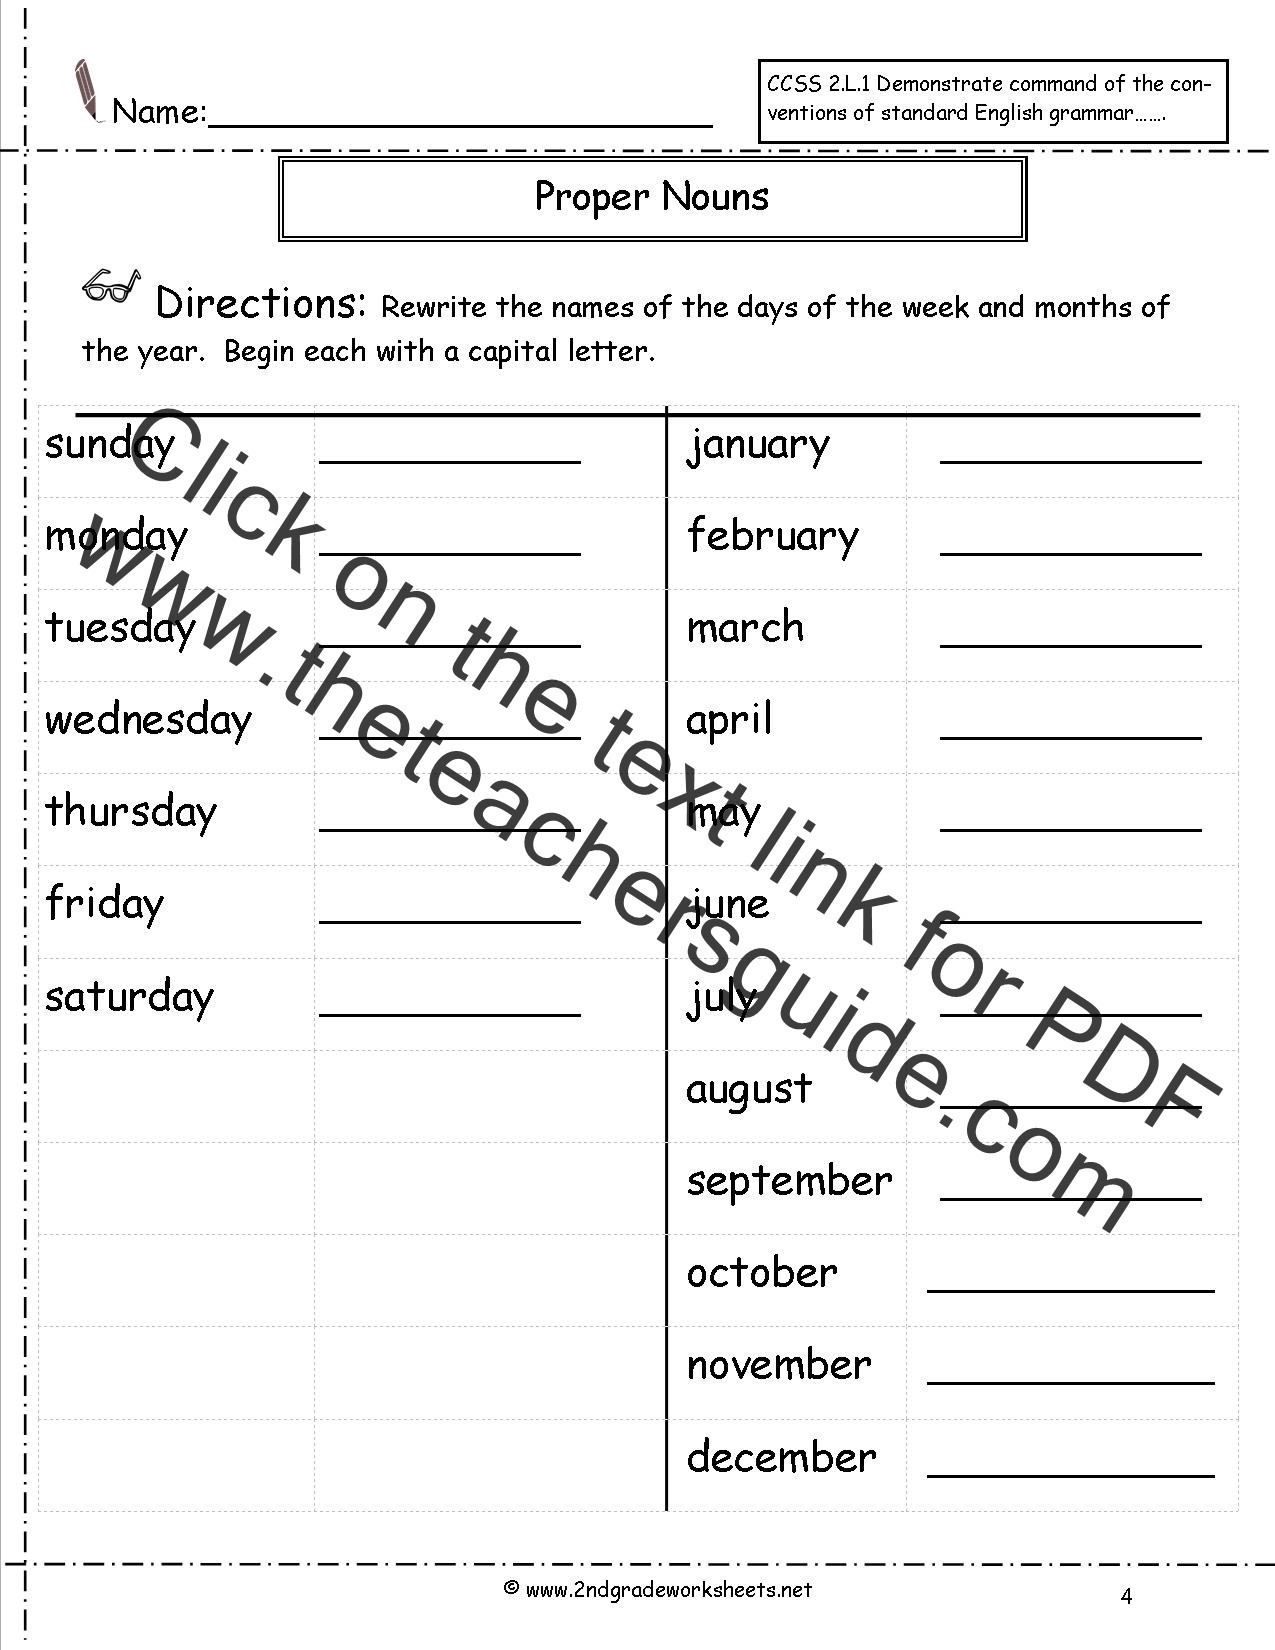 Proper Nouns Worksheet 2nd Grade Worksheets for Preschoolers